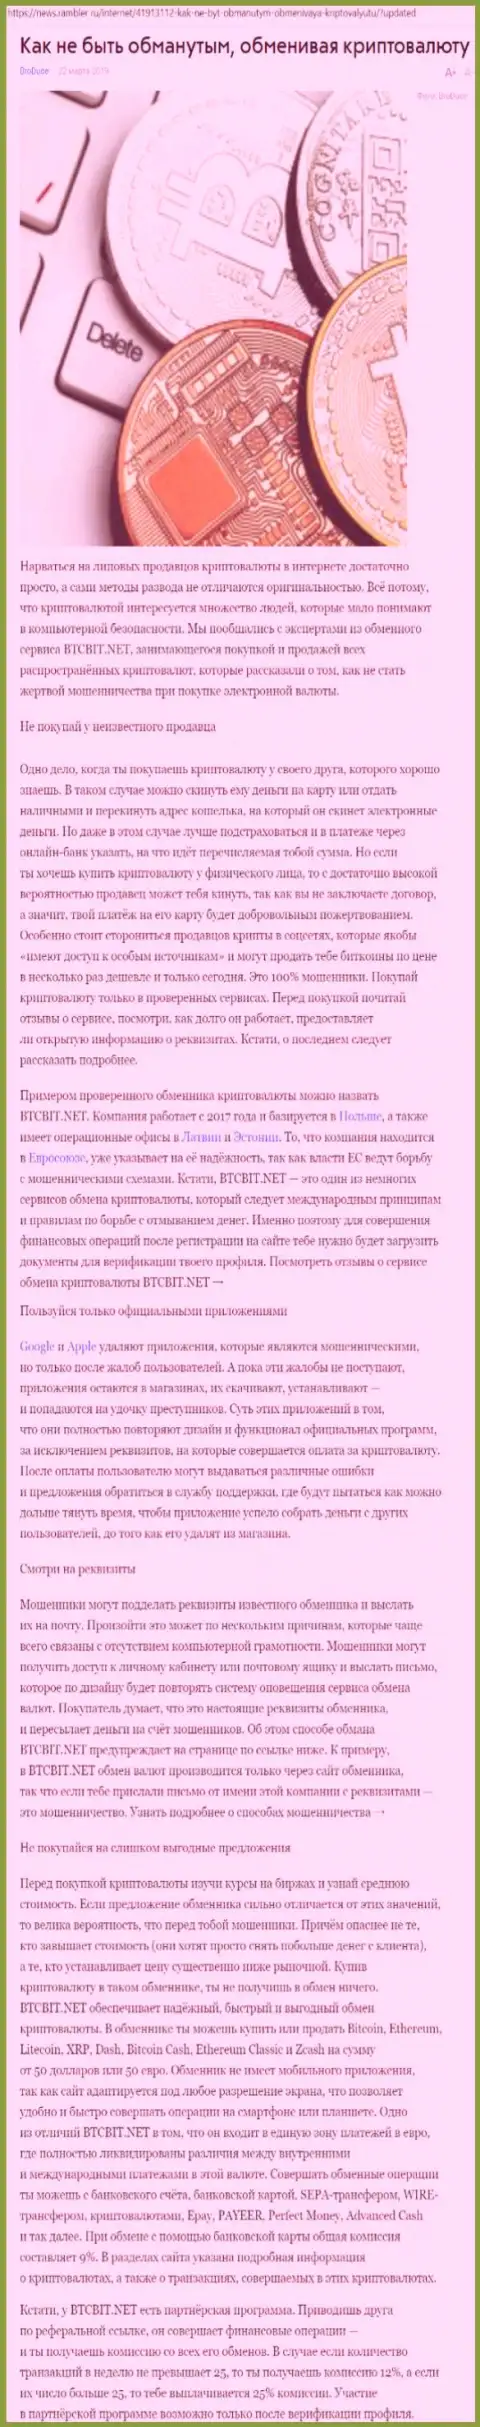 Статья об организации BTCBit на news rambler ru